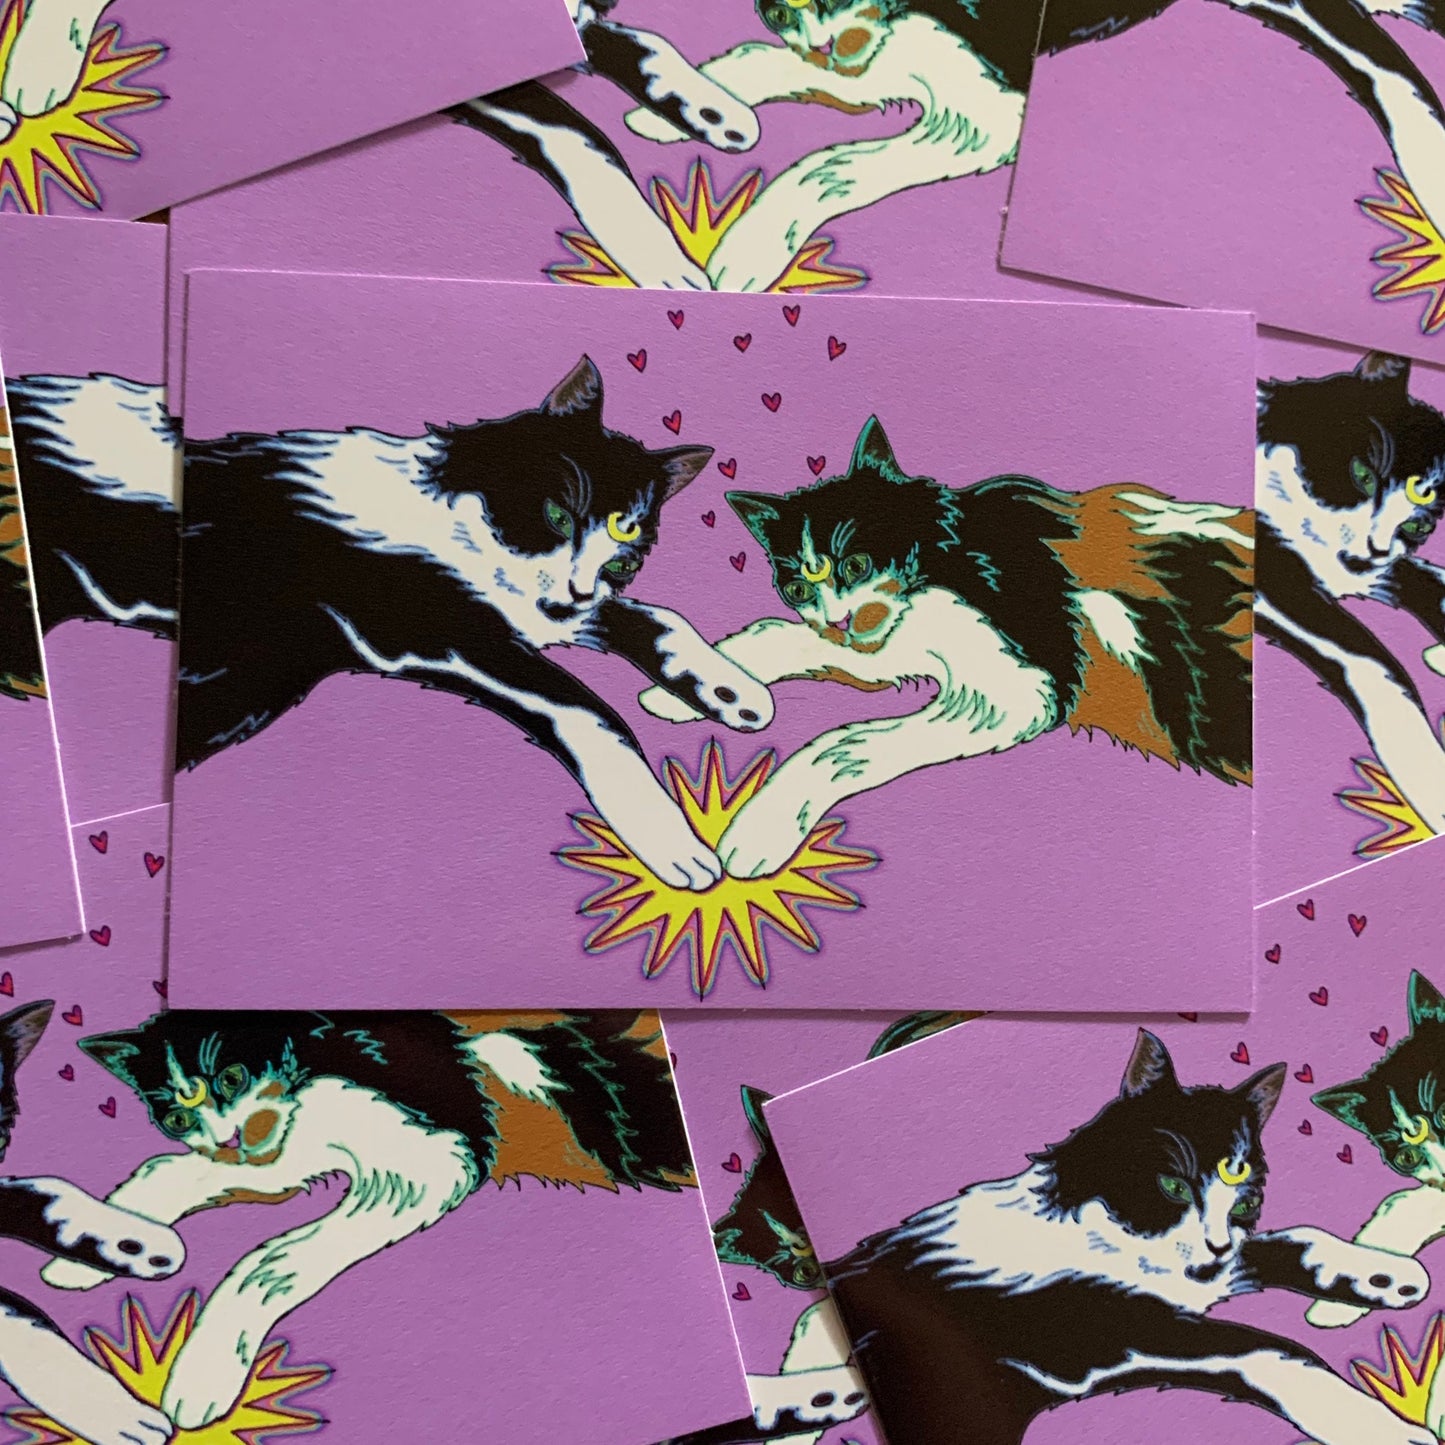 Cat Power variant #2 vinyl sticker